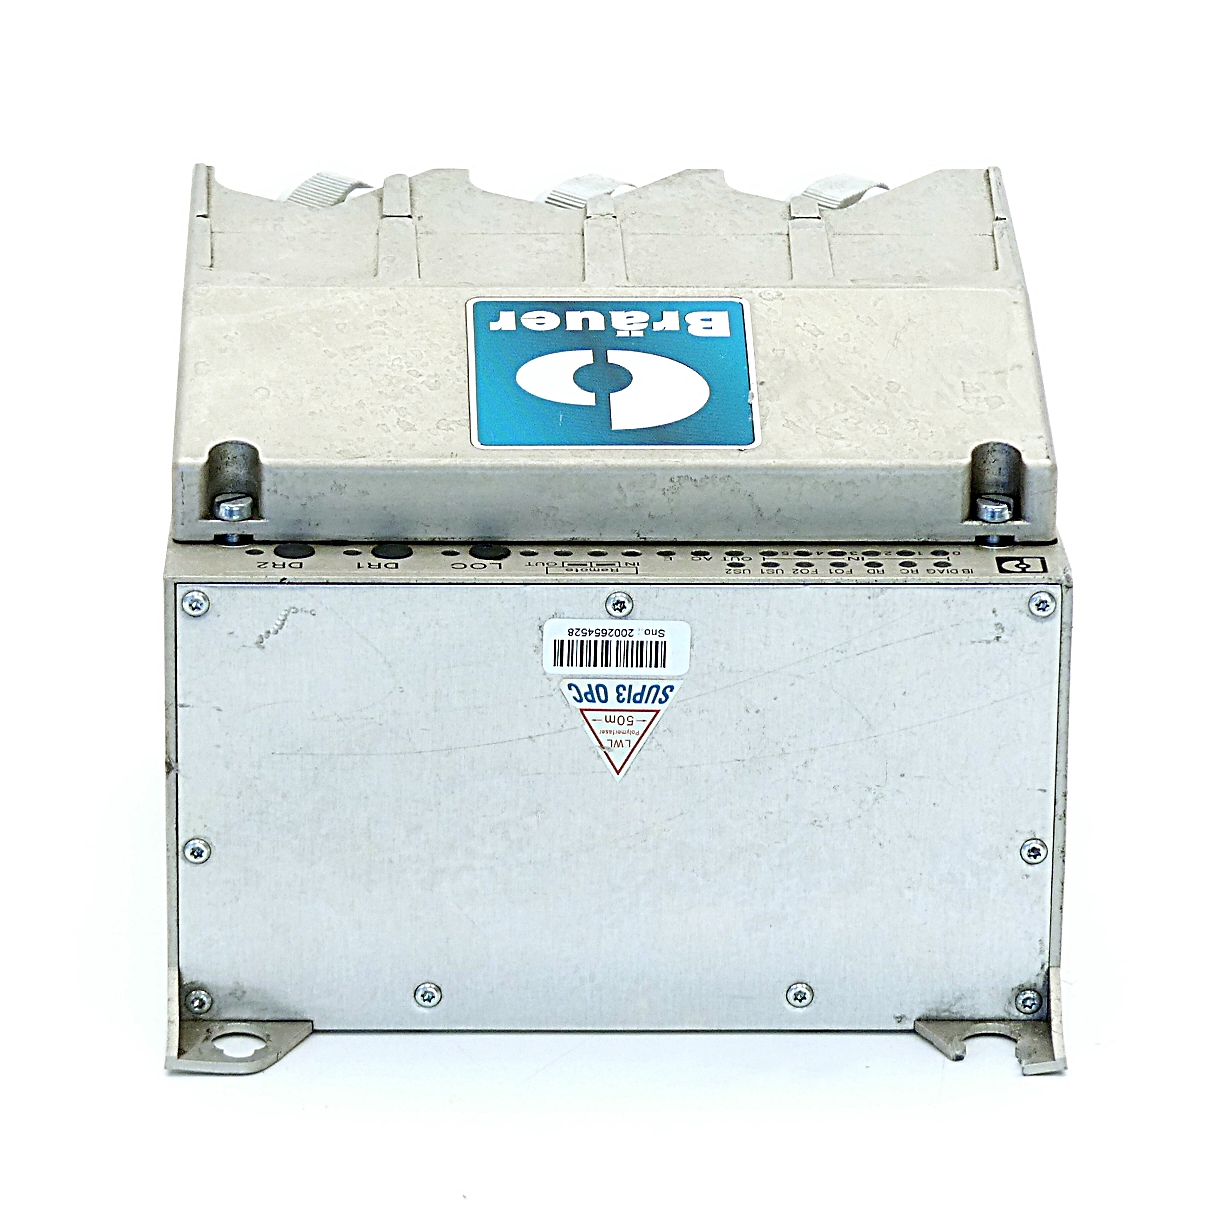 Motorschalter IBS RL 400 MLR R DIO 6/1 LK2MBD 